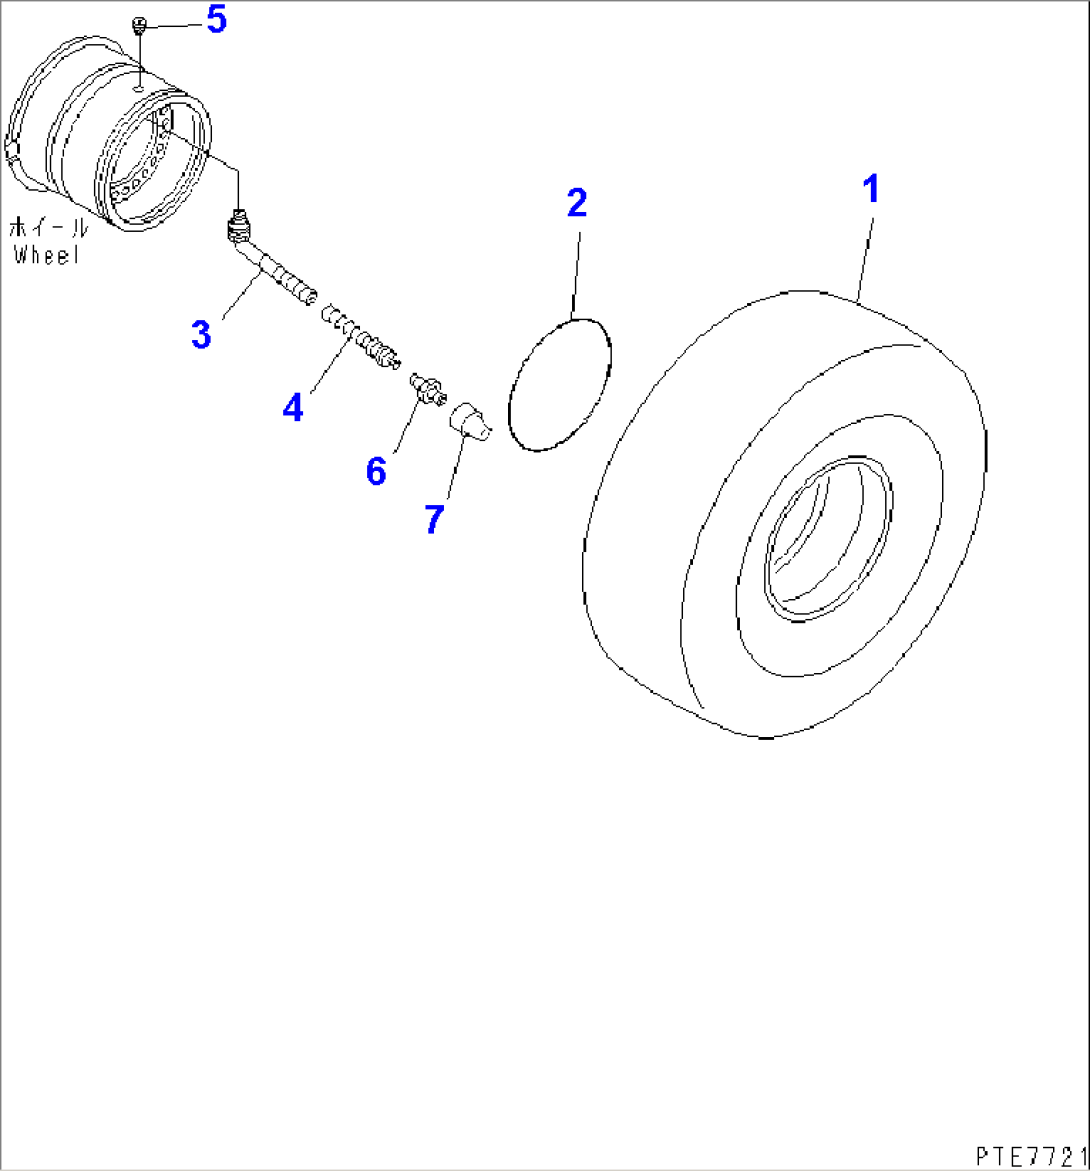 TIRE (26.5-25 20PR L3 TUBELESS TIRE)(#85001-)